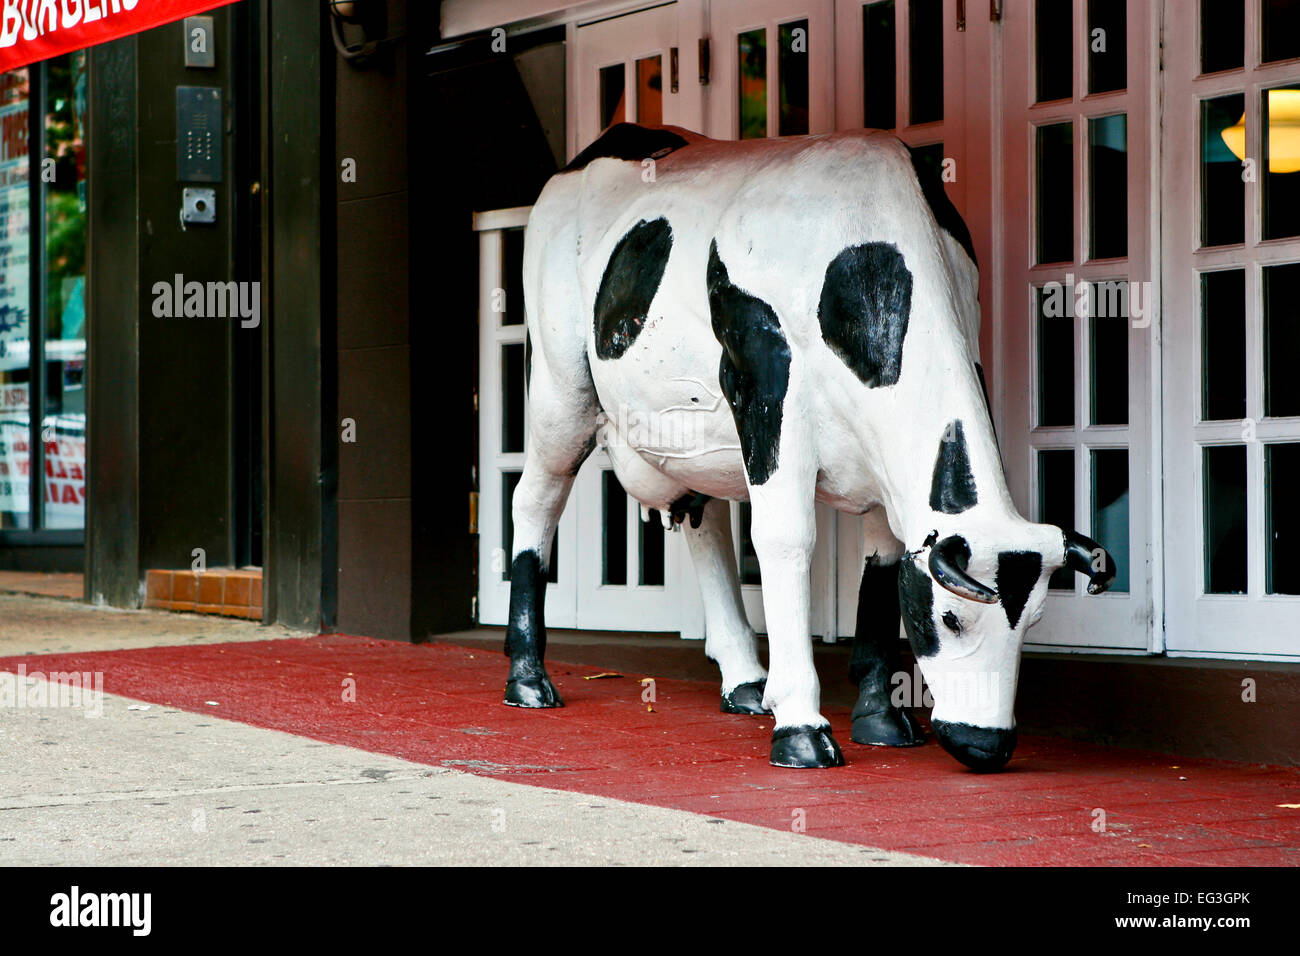 Una mucca artificiale a grandezza naturale fuori da un ristorante a Brooklyn, New York, NY, USA. Strano Foto Stock